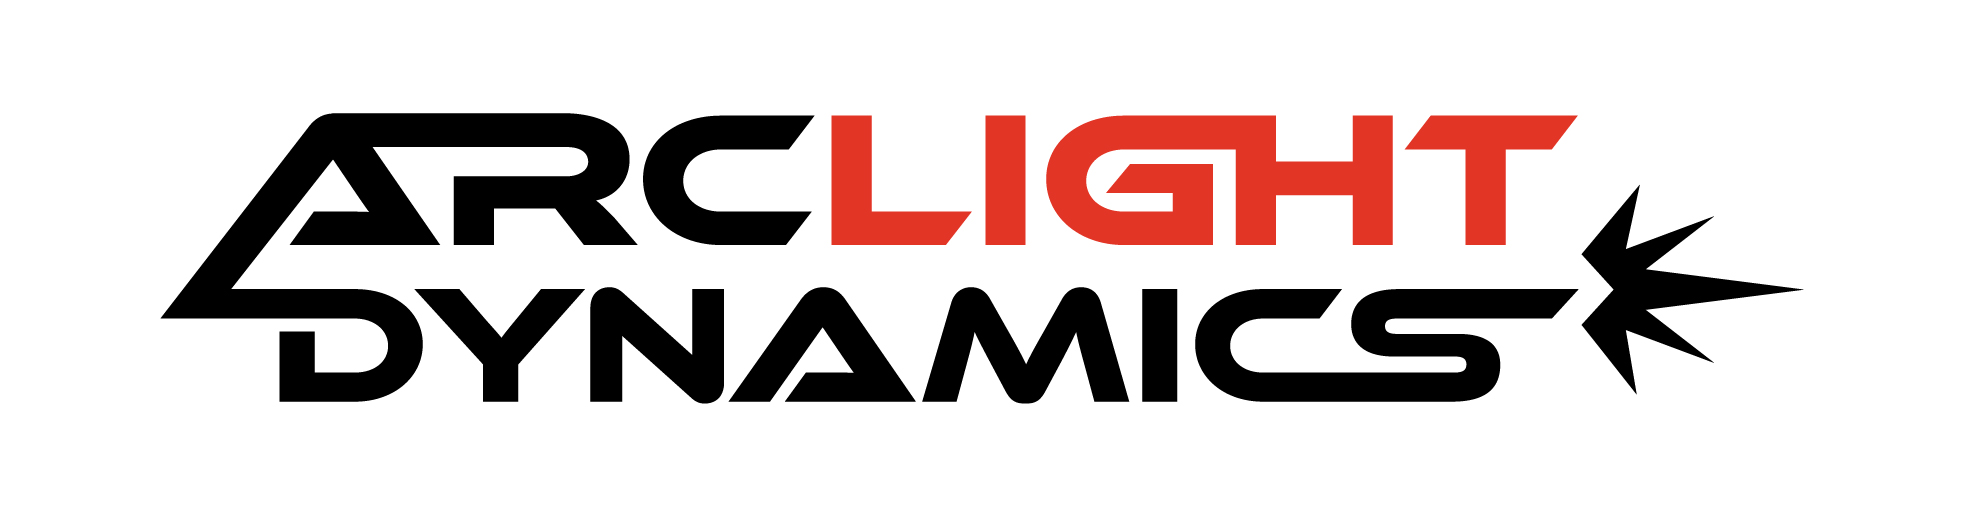 Arclight Dynamics logo